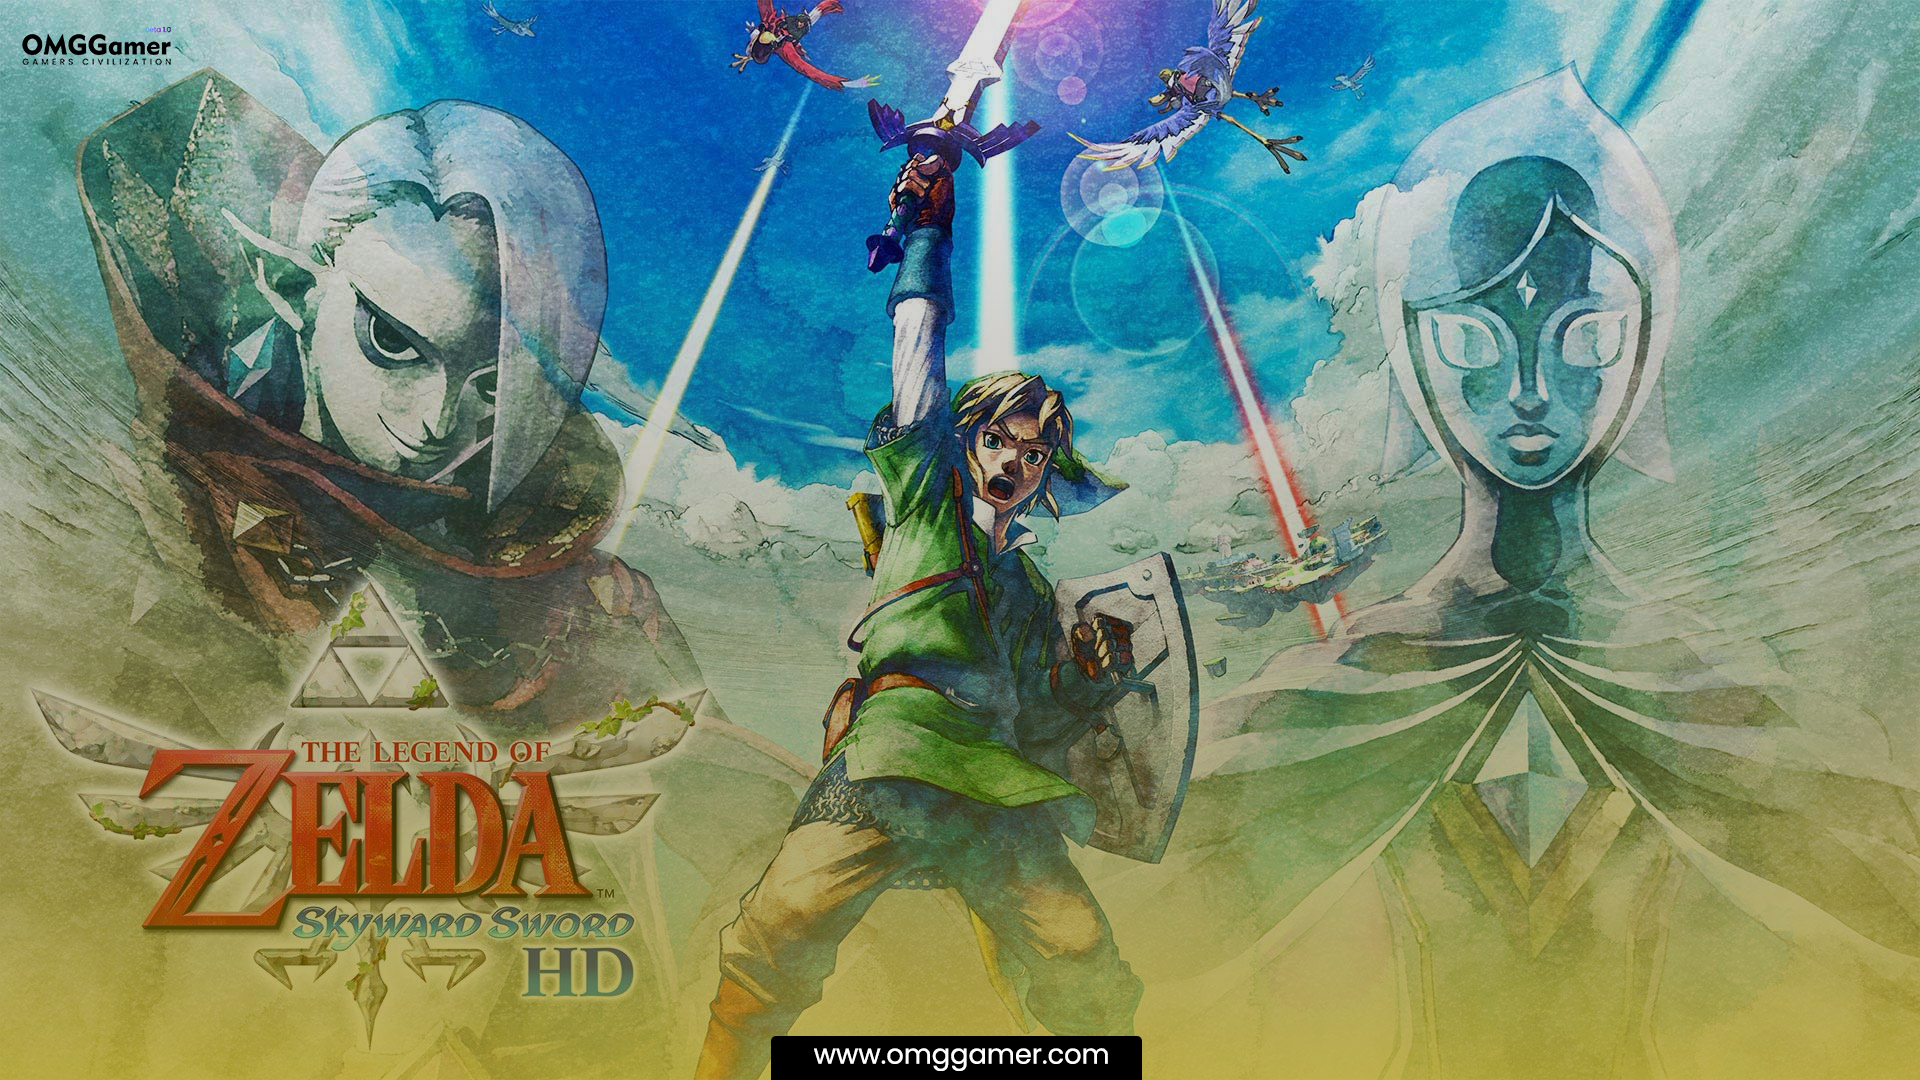 The Legend of Zelda: The Legend Zelda Games in Order